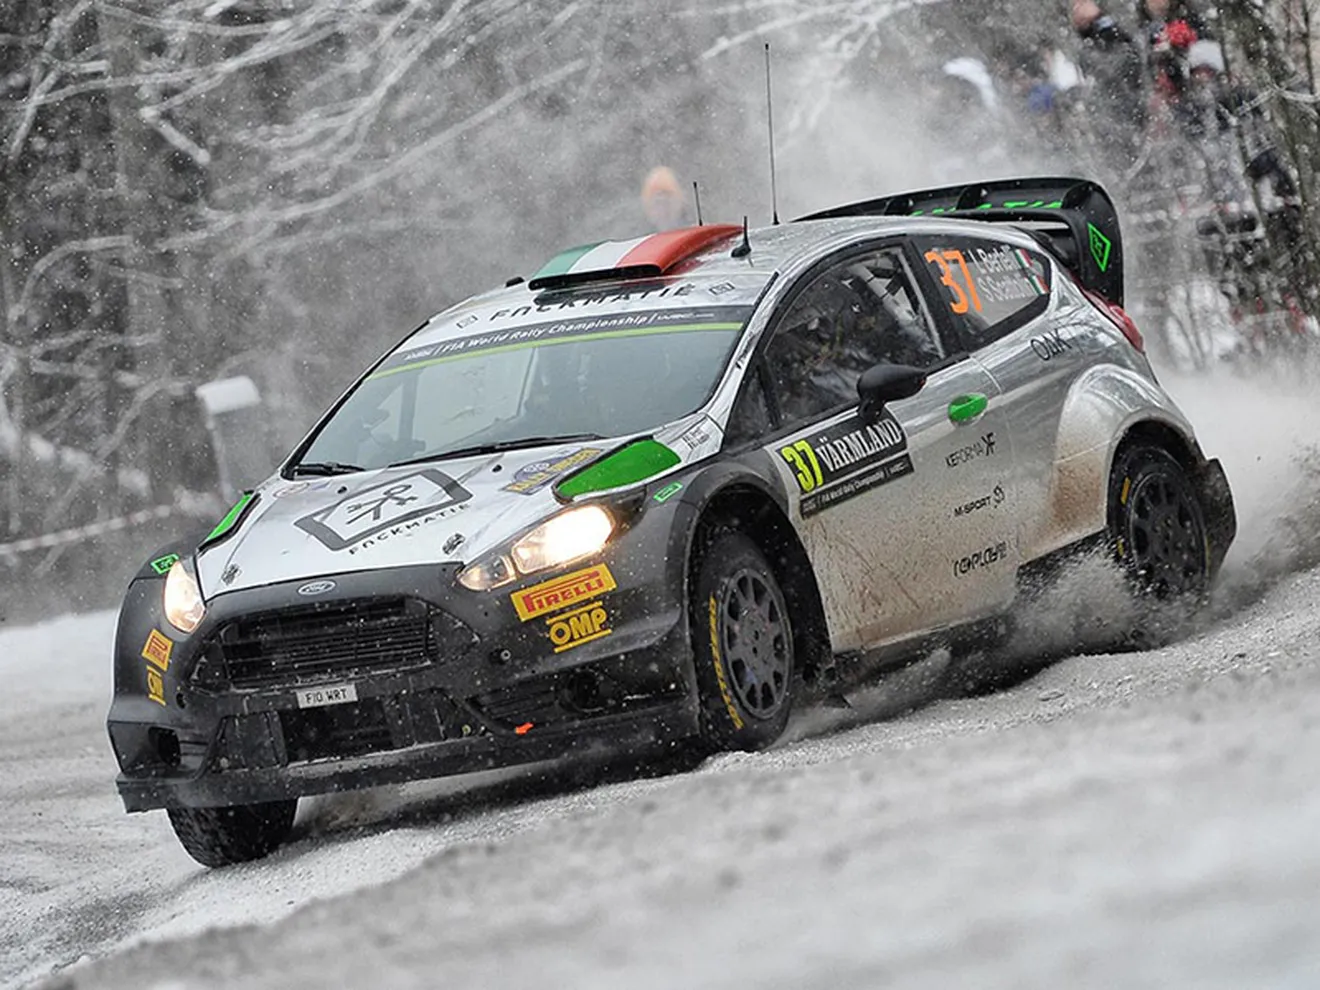 Desplante de Lorenzo Bertelli en el Rally de Suecia